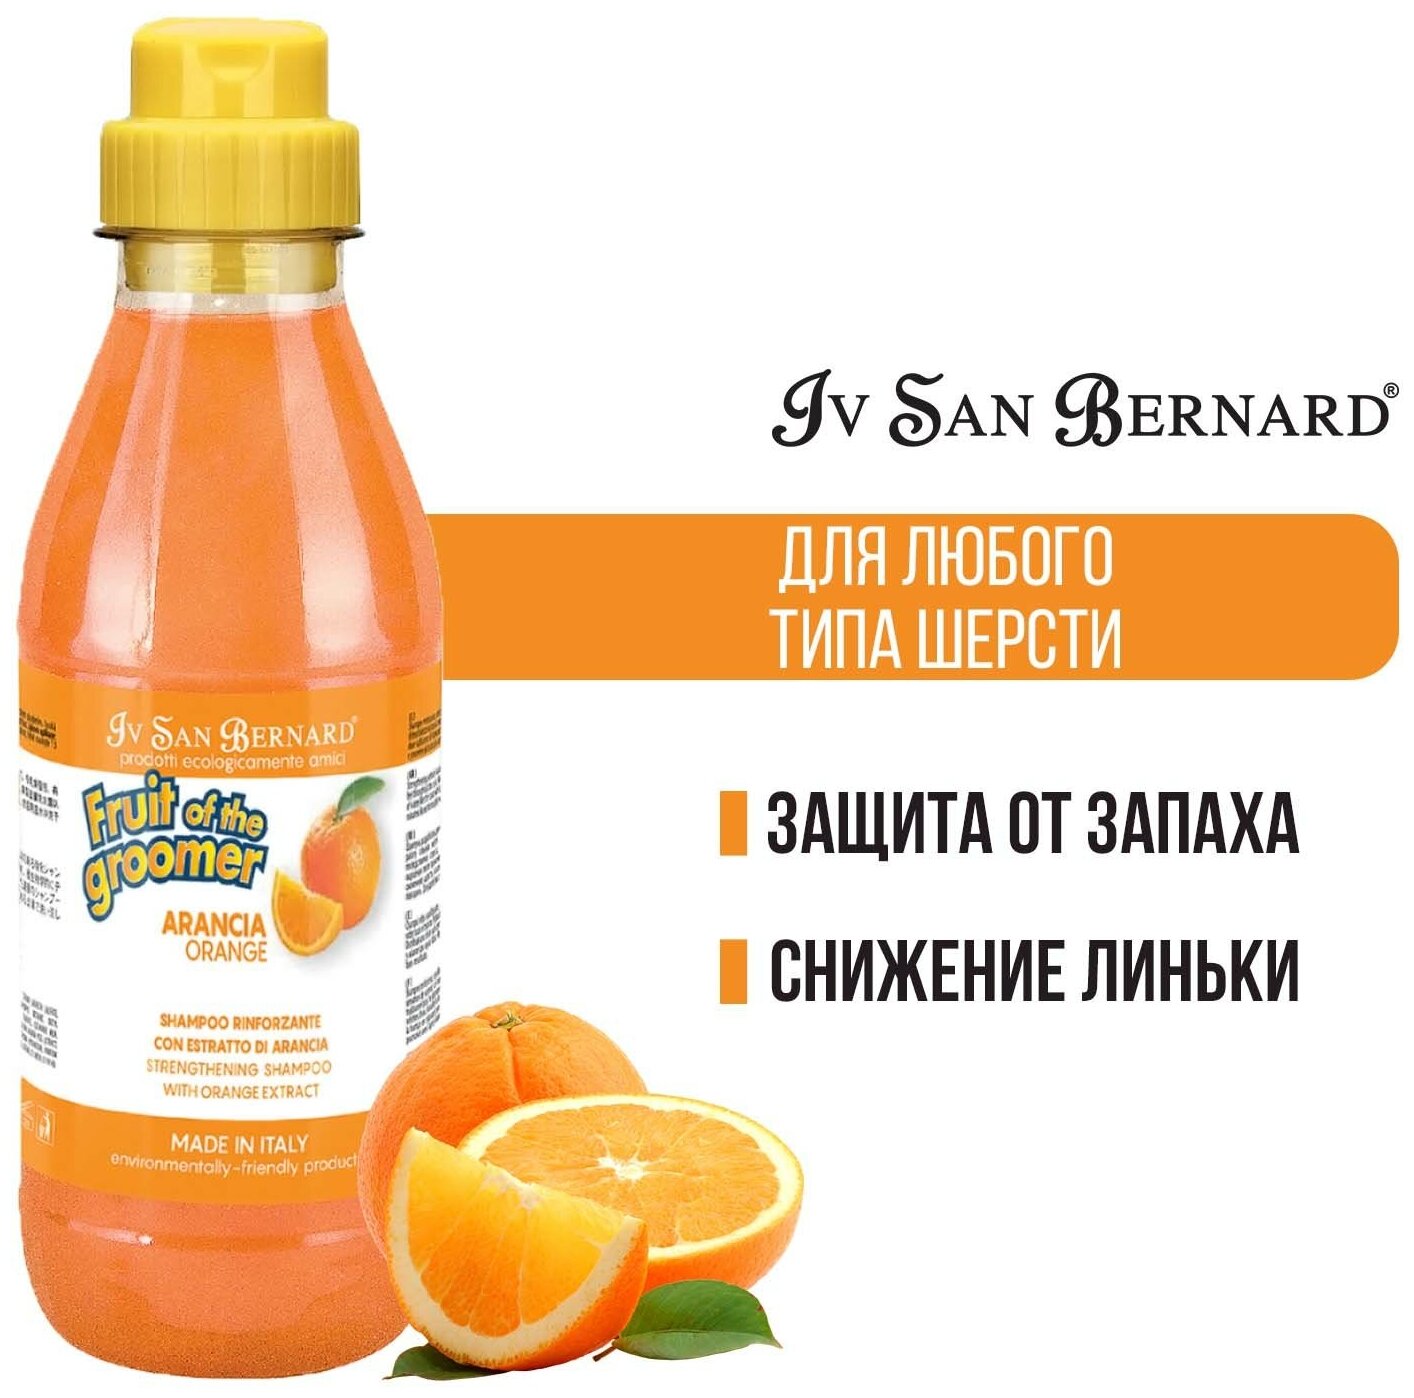 Шампунь Iv San Bernard Fruit of the Groomer Orange для слабой выпадающей шерсти с силиконом 500 мл